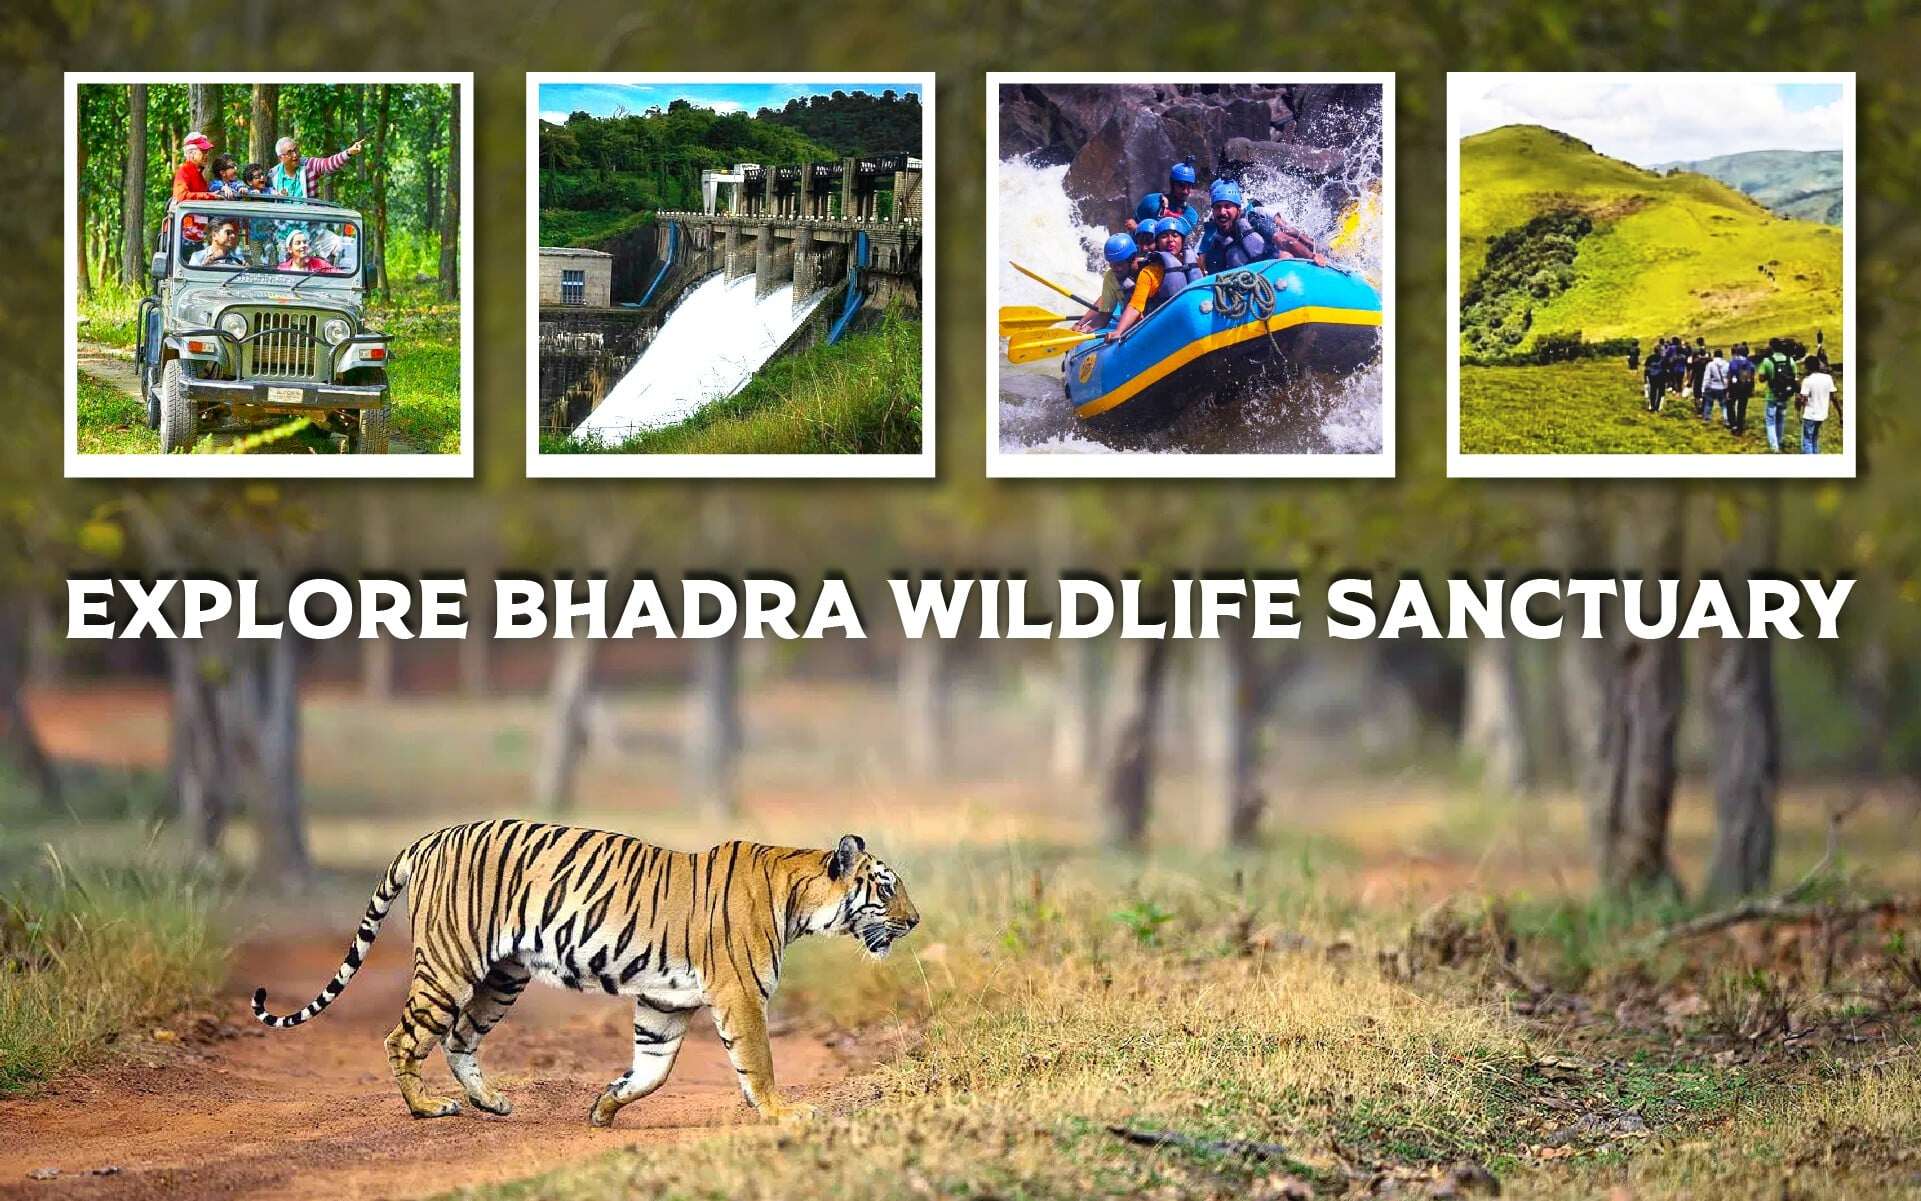 Explore Bhadra Wildlife Sanctuary: Chikmagalur's Gem